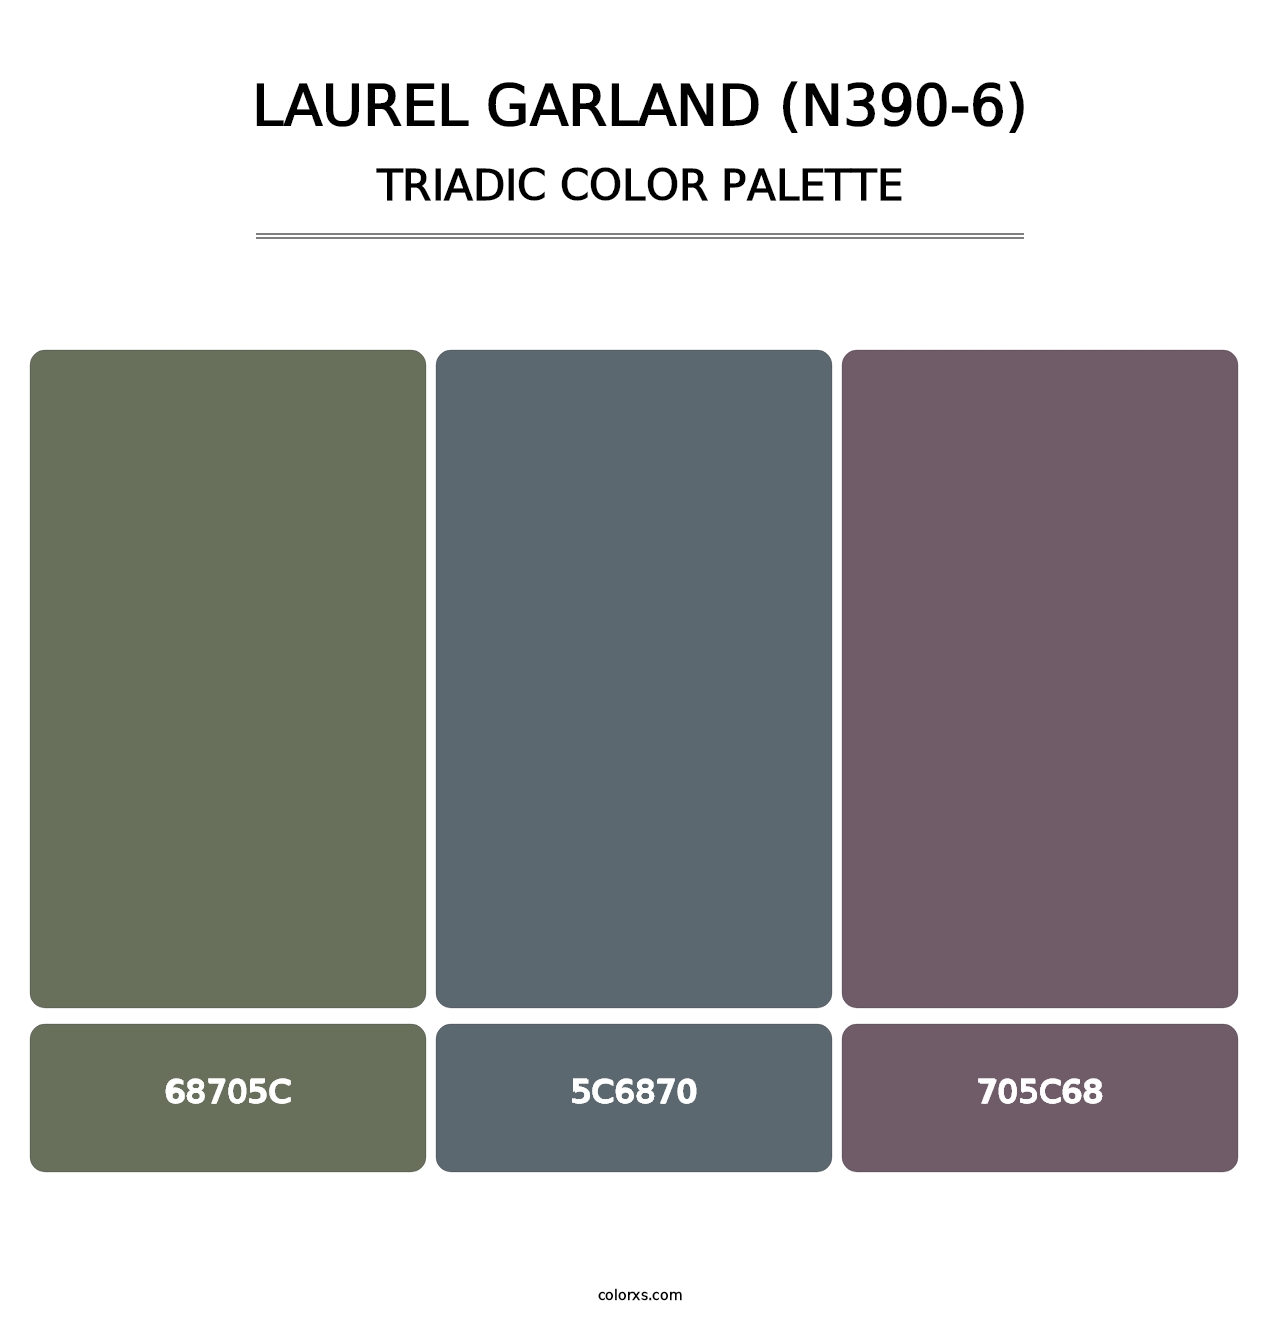 Laurel Garland (N390-6) - Triadic Color Palette